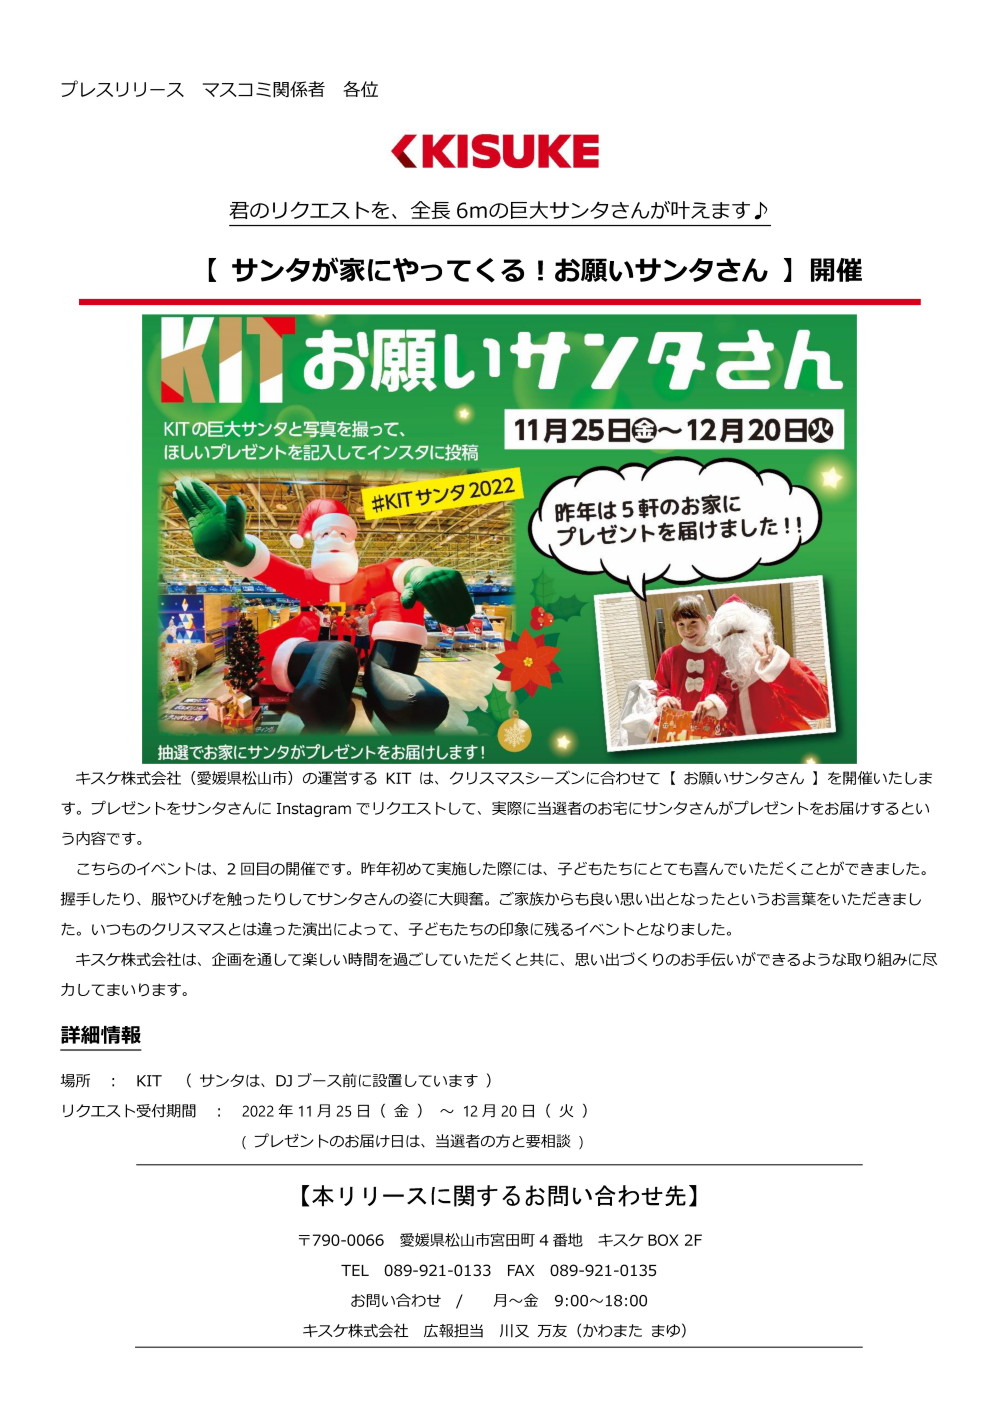 キスケ株式会社（愛媛県松山市）の運営するKIT は、クリスマスシーズンに合わせて【 お願いサンタさん 】を開催いたします。プレゼントをサンタさんにInstagramでリクエストして、実際に当選者のお宅にサンタさんがプレゼントをお届けするという内容です。こちらのイベントは、2回目の開催です。昨年初めて実施した際には、子どもたちにとても喜んでいただくことができました。握手したり、服やひげを触ったりしてサンタさんの姿に大興奮。ご家族からも良い思い出となったというお言葉をいただきました。いつものクリスマスとは違った演出によって、子どもたちの印象に残るイベントとなりました。キスケ株式会社は、企画を通して楽しい時間を過ごしていただくと共に、思い出づくりのお手伝いができるような取り組みに尽力してまいります。詳細
